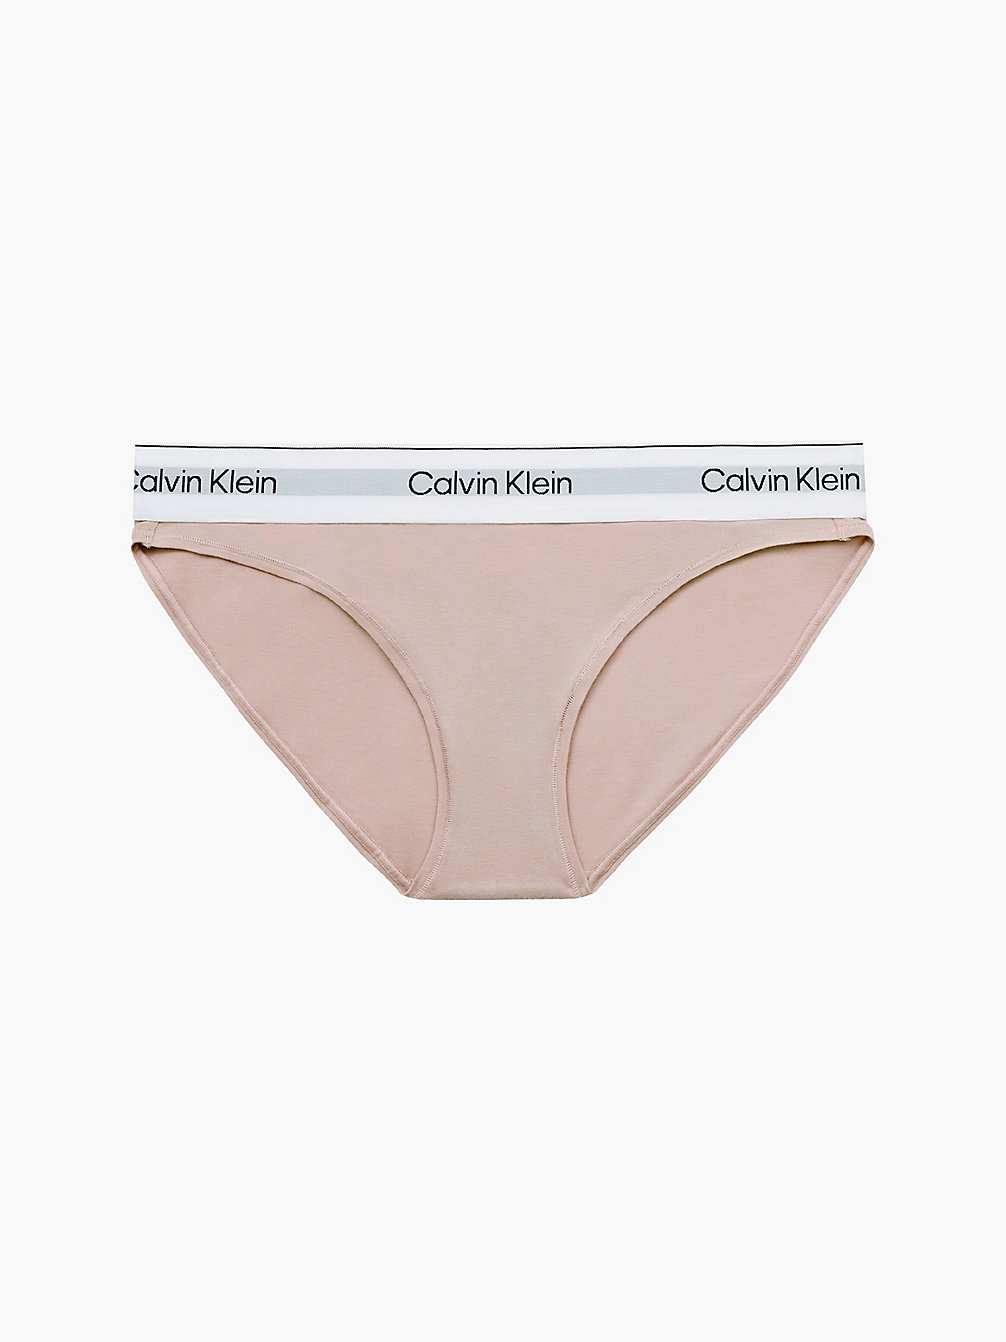 CEDAR Bikini Brief - Modern Cotton undefined women Calvin Klein